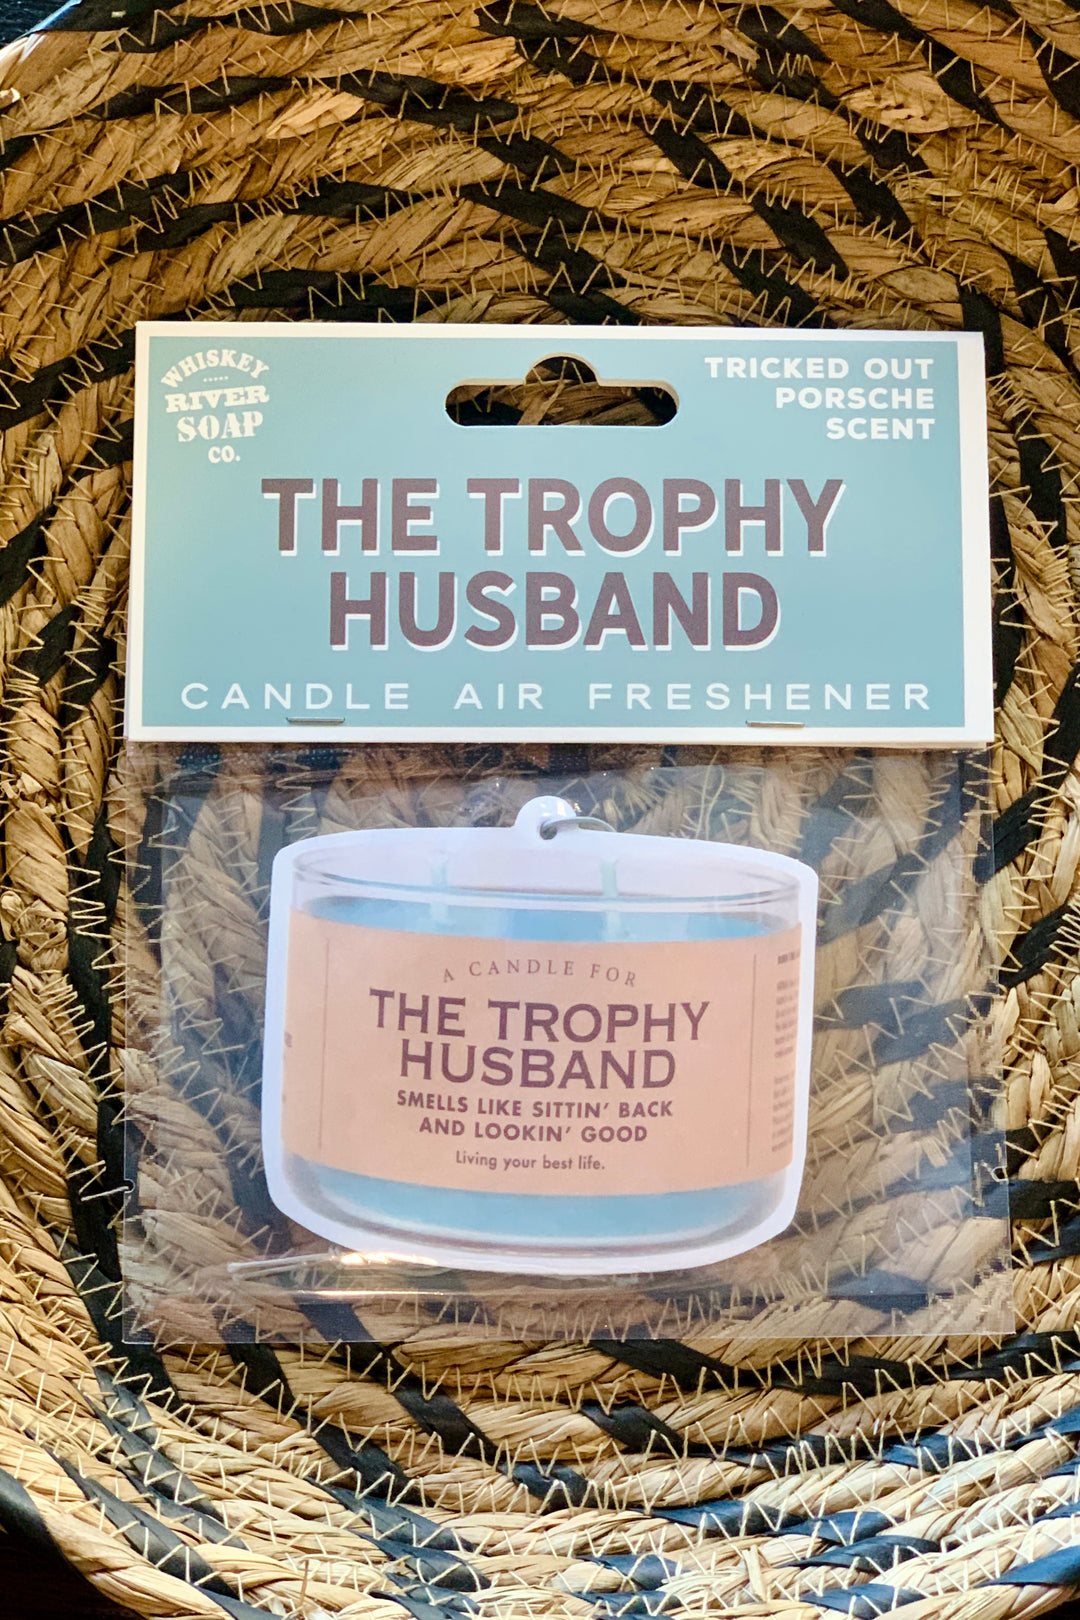 The Trophy Husband - Air Freshener